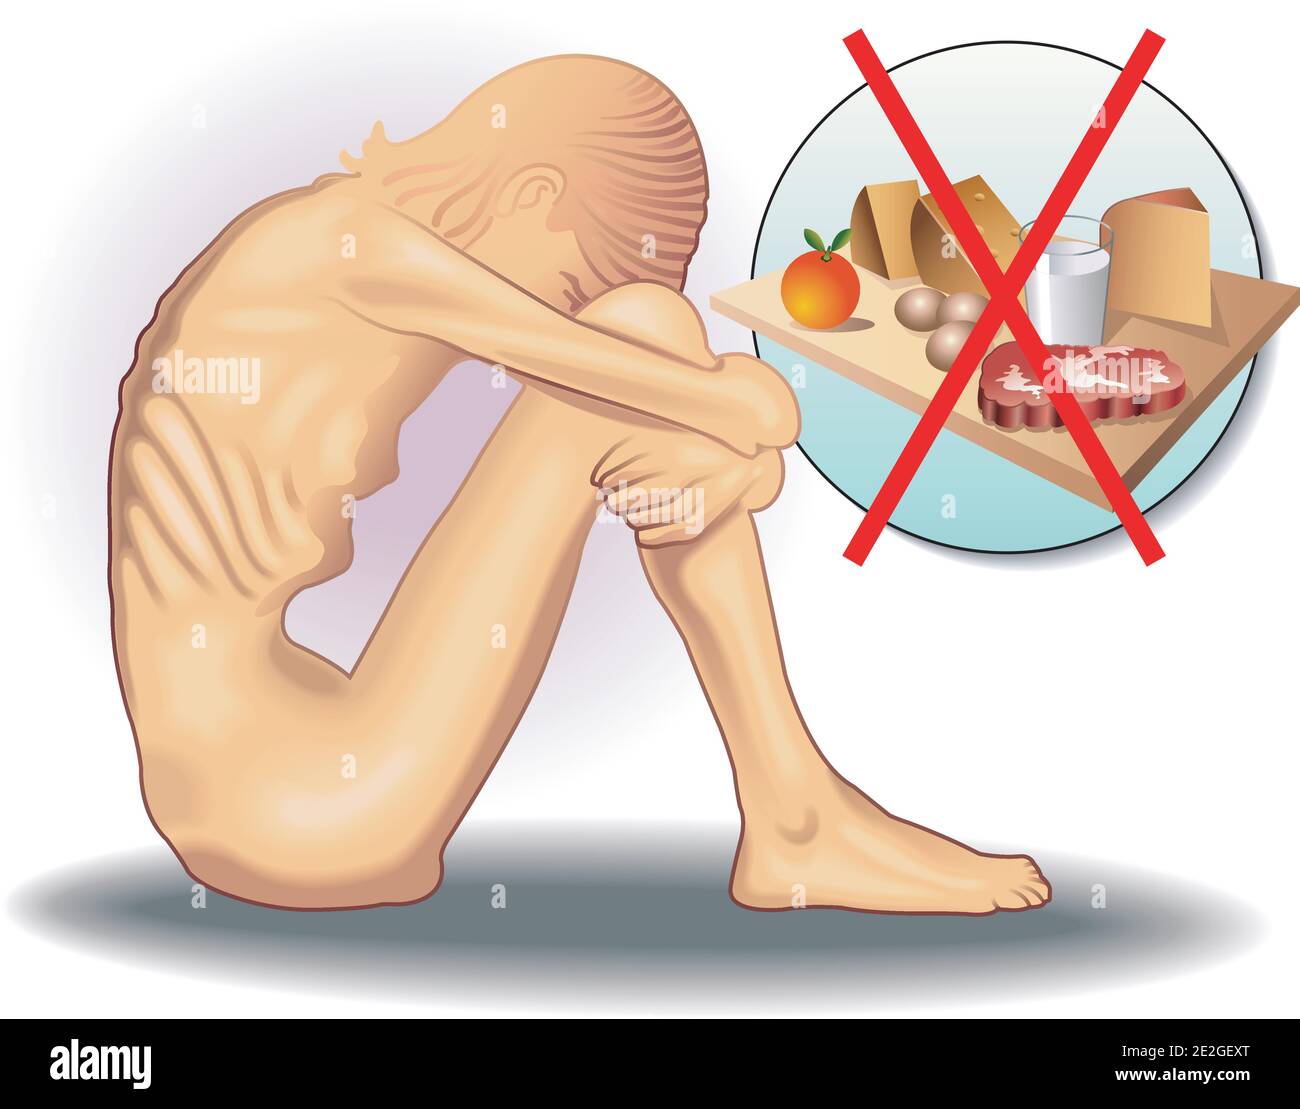 Symbolische medizinische Illustration der Essstörung genannt Anorexie Stock Vektor